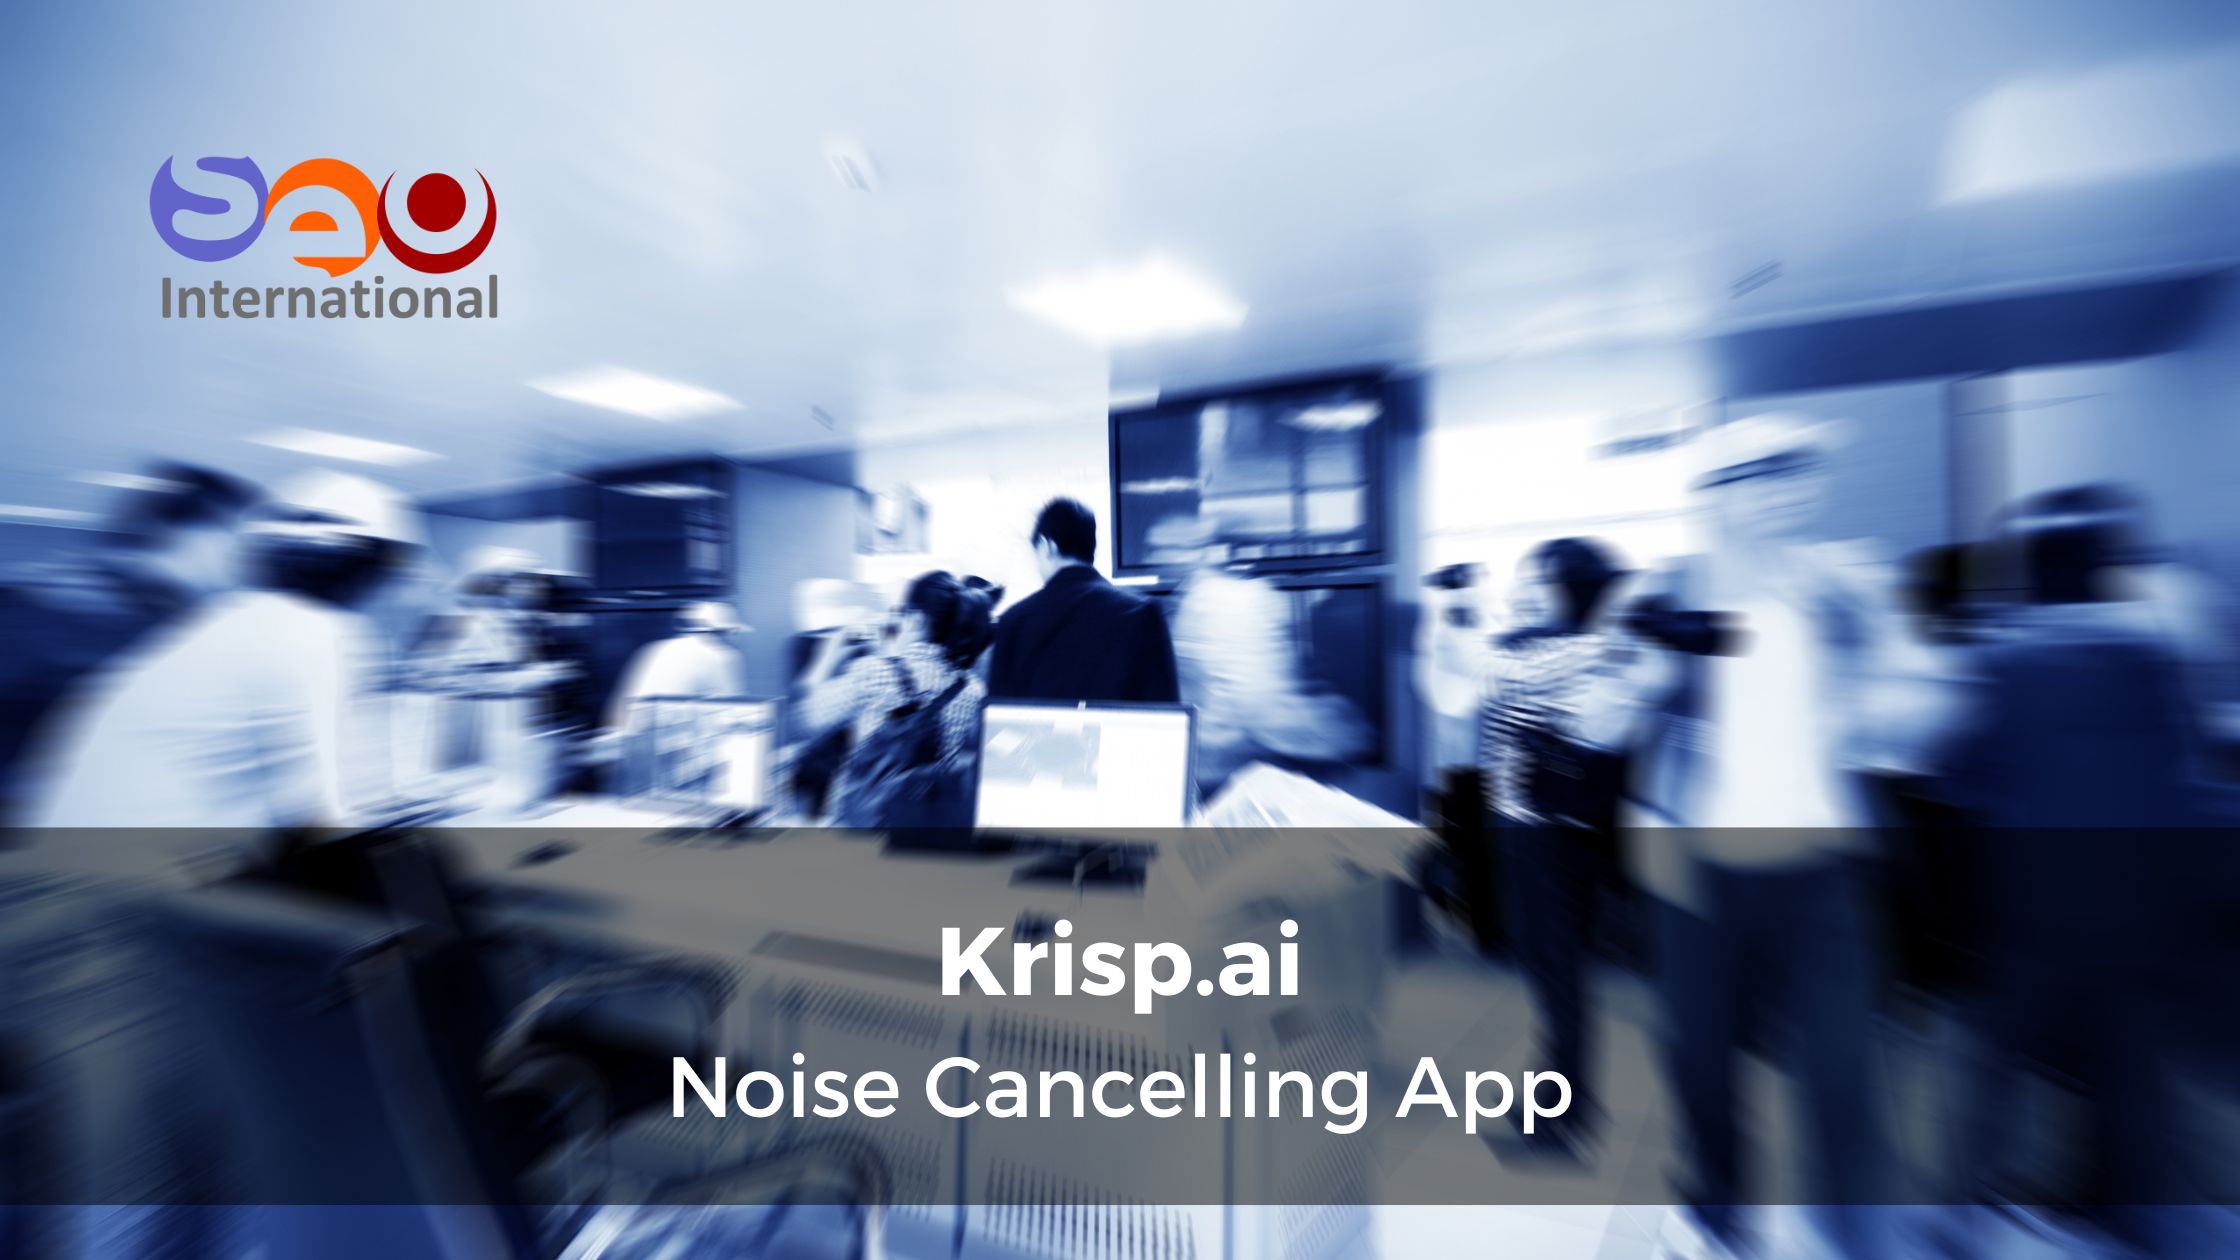 Krisp.ai - Noise Canelling App - Supercharge Your Online Meetings